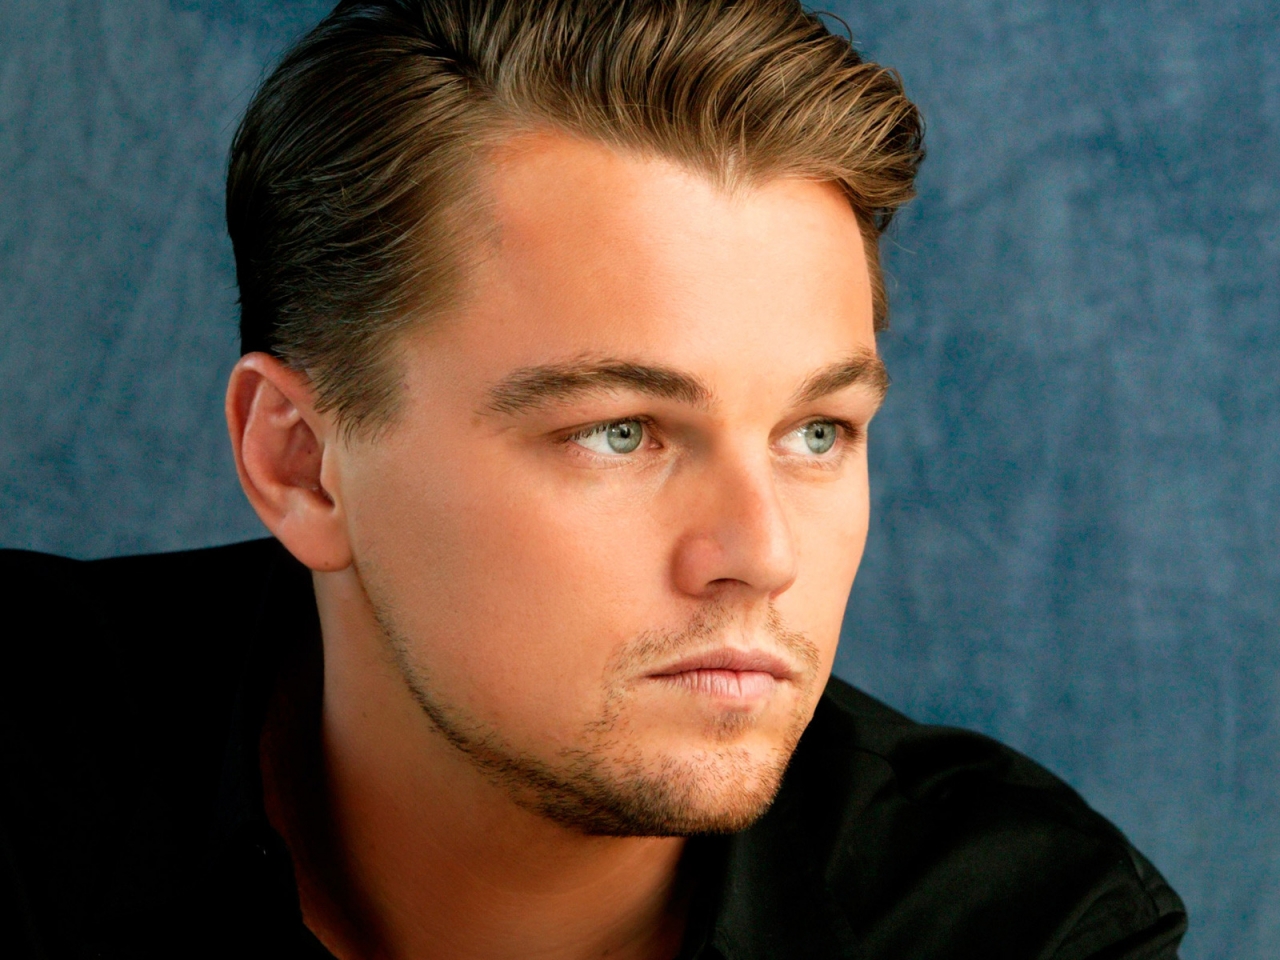 Beautiful Leonardo DiCaprio for 1280 x 960 resolution